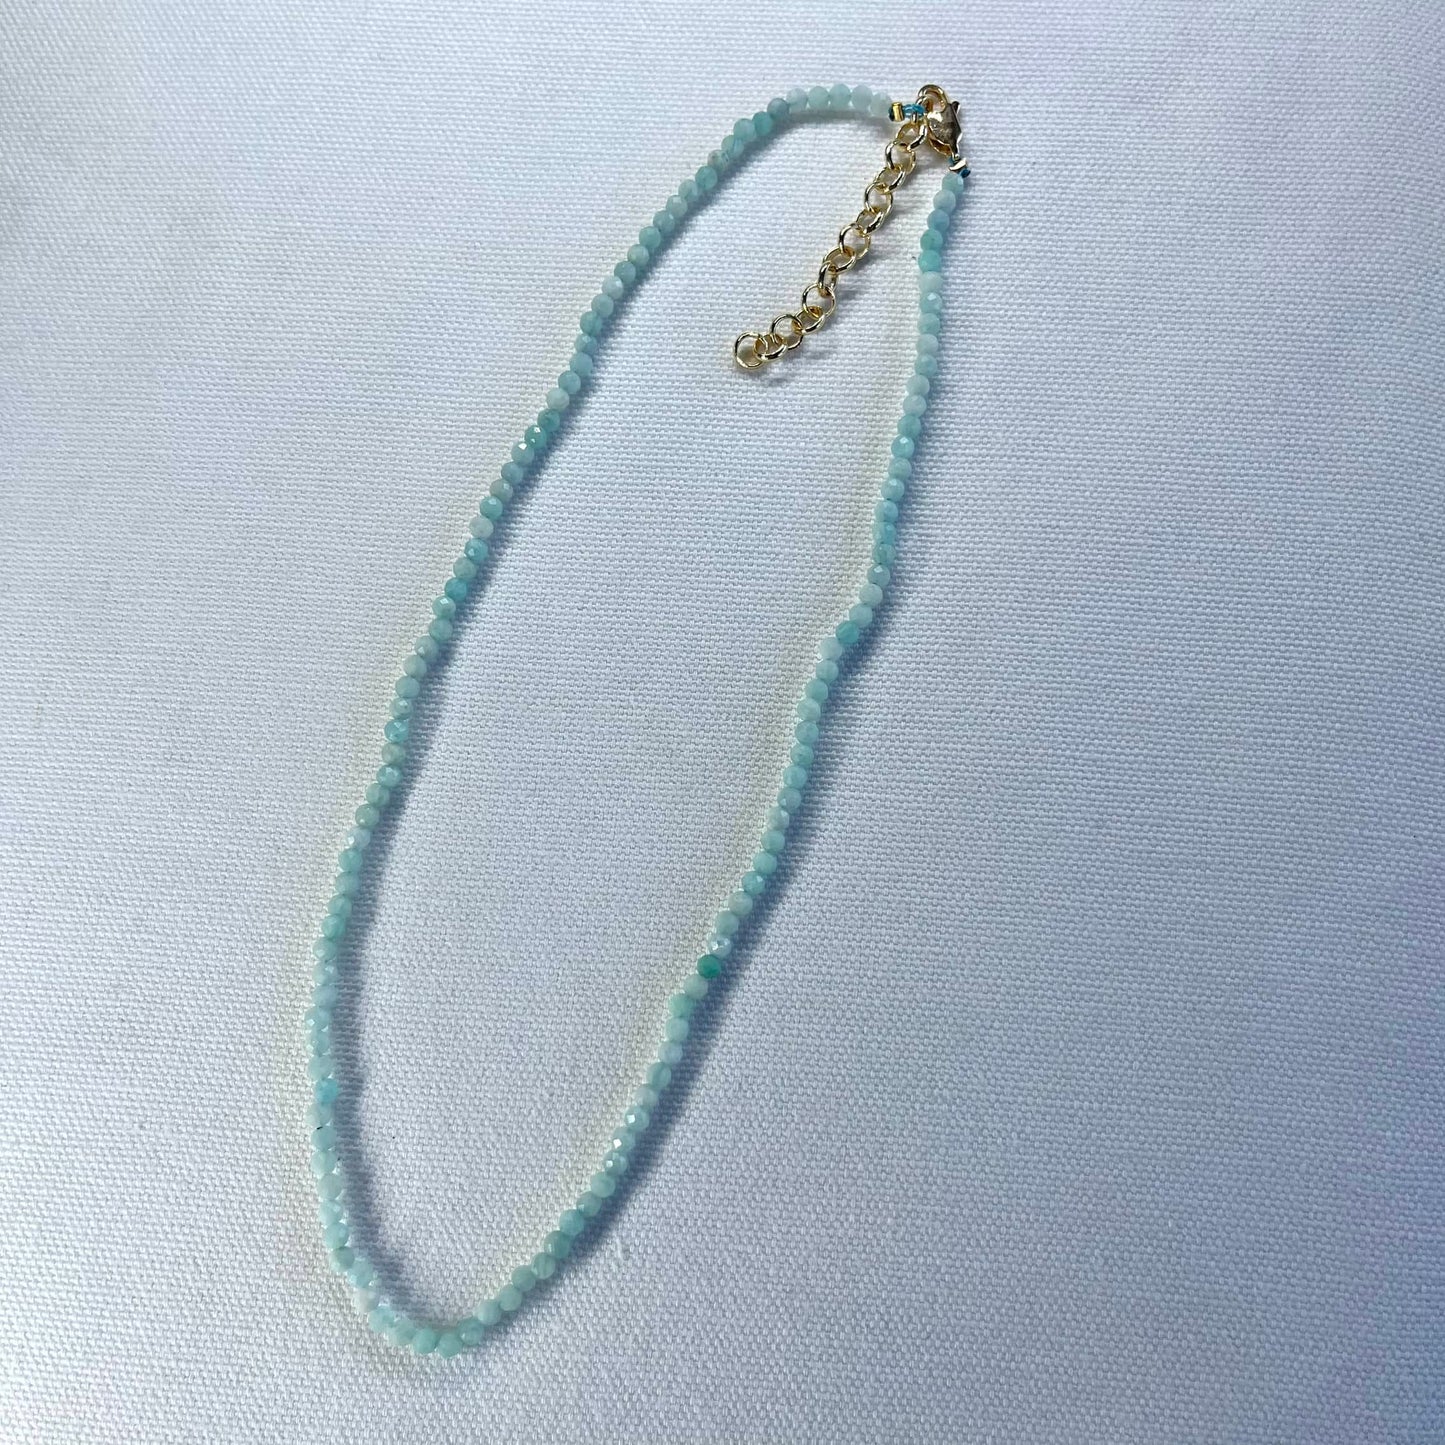 Ethereal Necklace - Amazonite